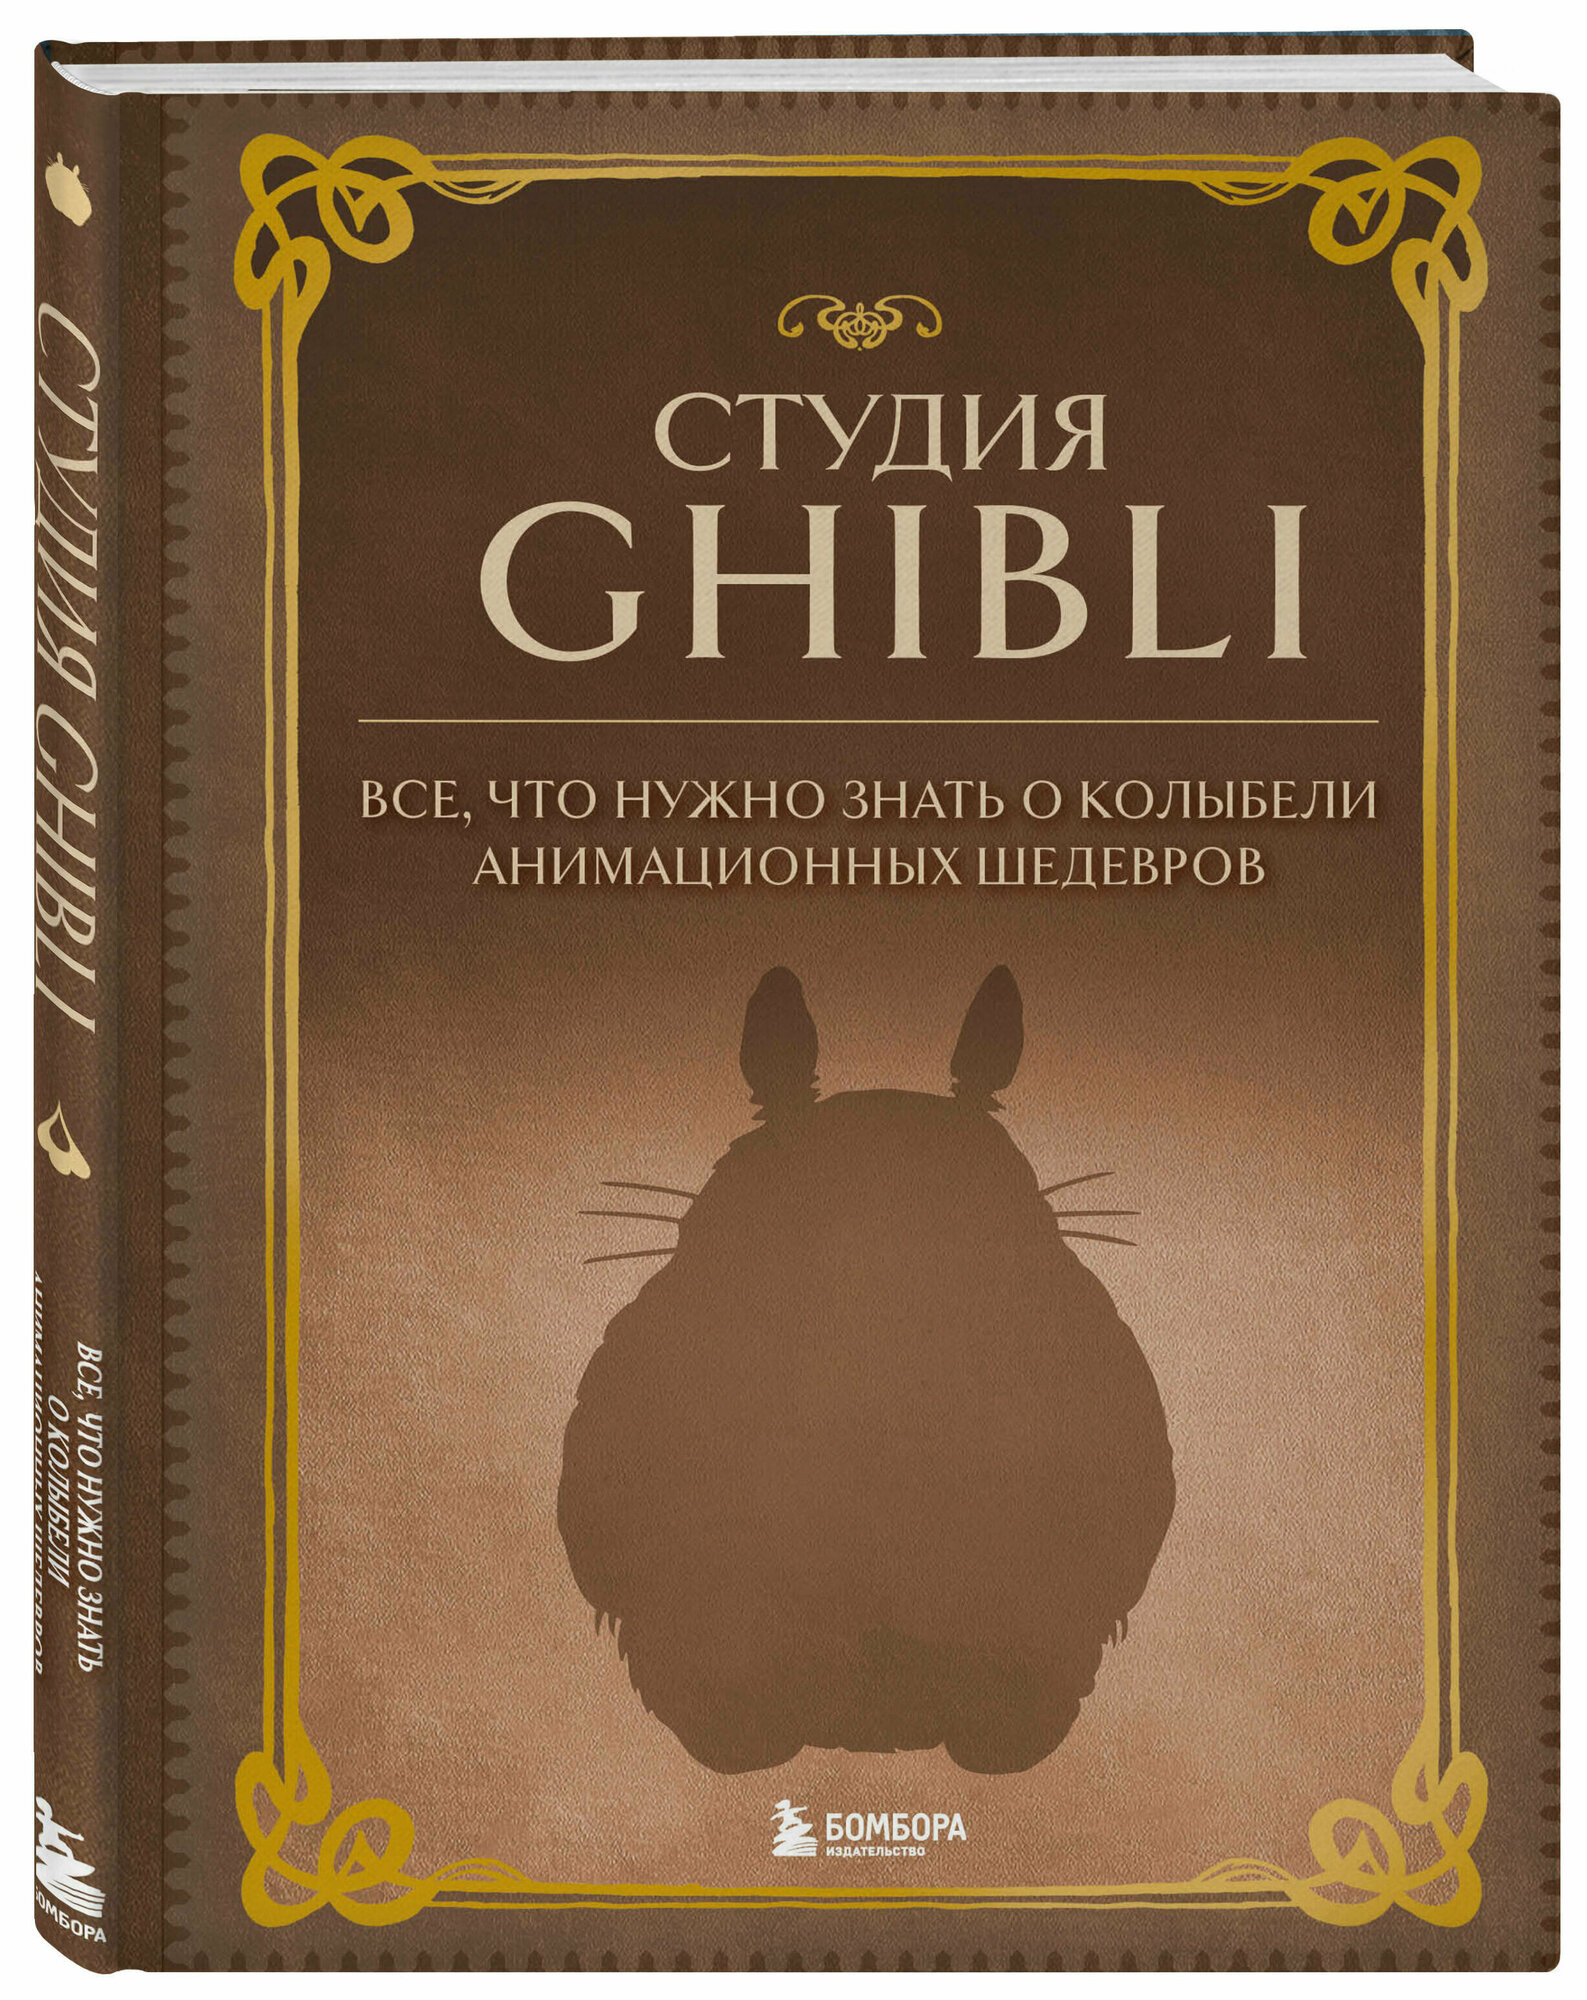 Студия Ghibli. Все, что нужно знать о колыбели анимационных шедевров - фото №4